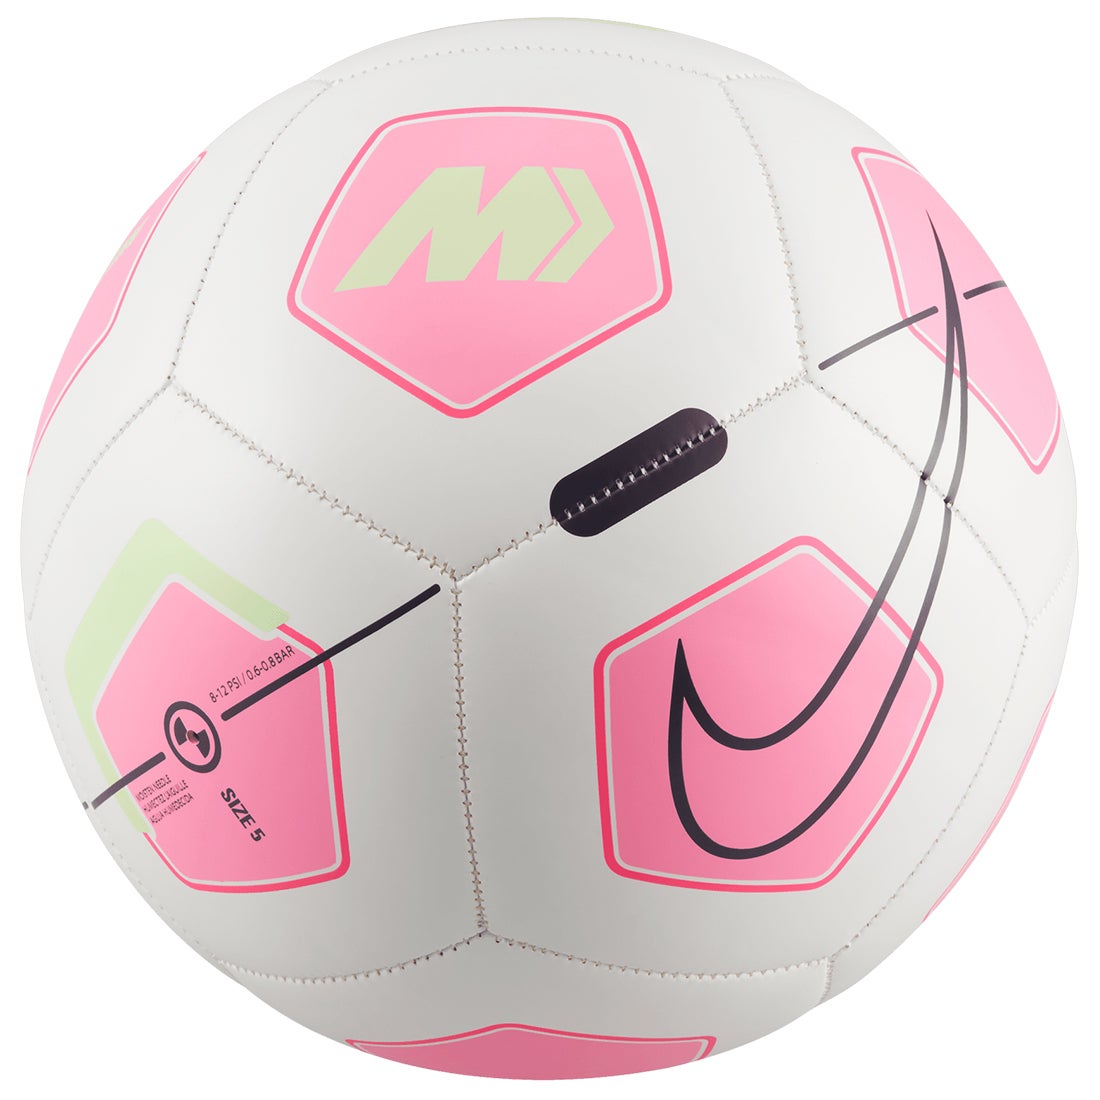 NIKE ナイキ マーキュリアル フェード 5号球(ホワイト×ピンク) DD0002 102(5号) サッカー ボール -サッカーショップ【SWS】